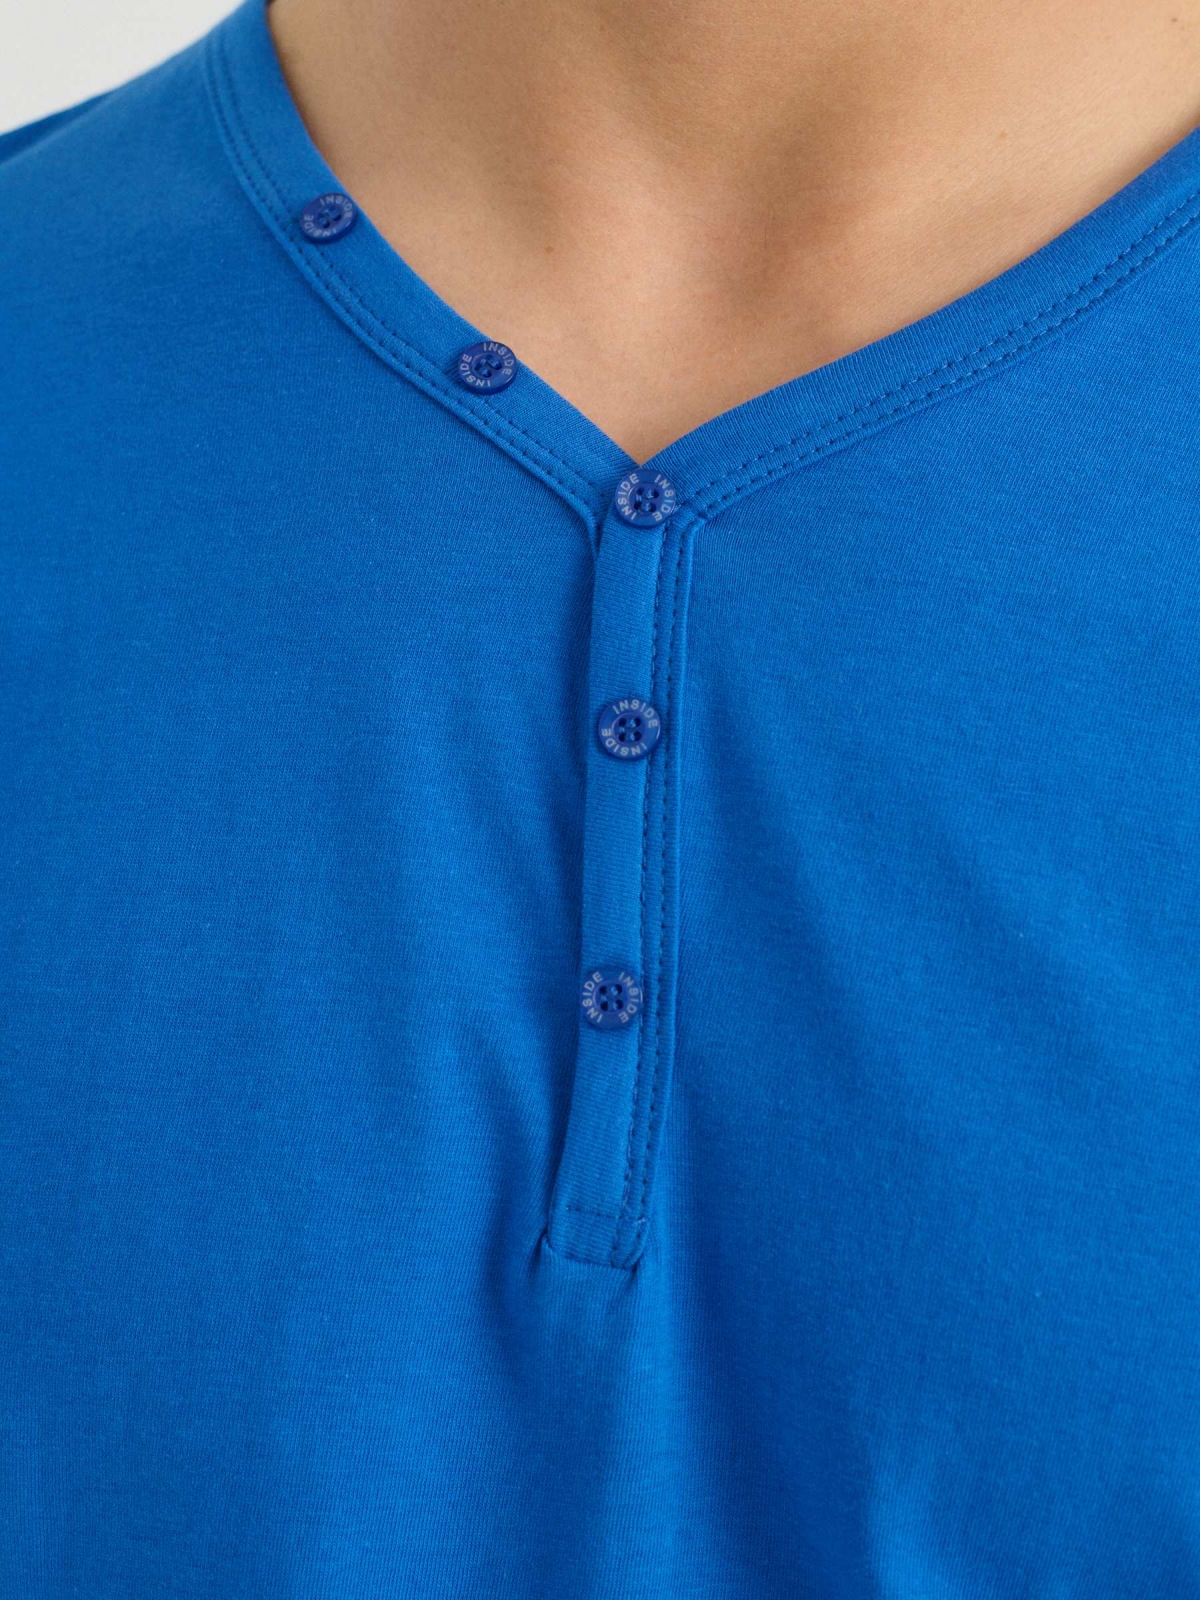 T-shirt gola com botões azul vista detalhe